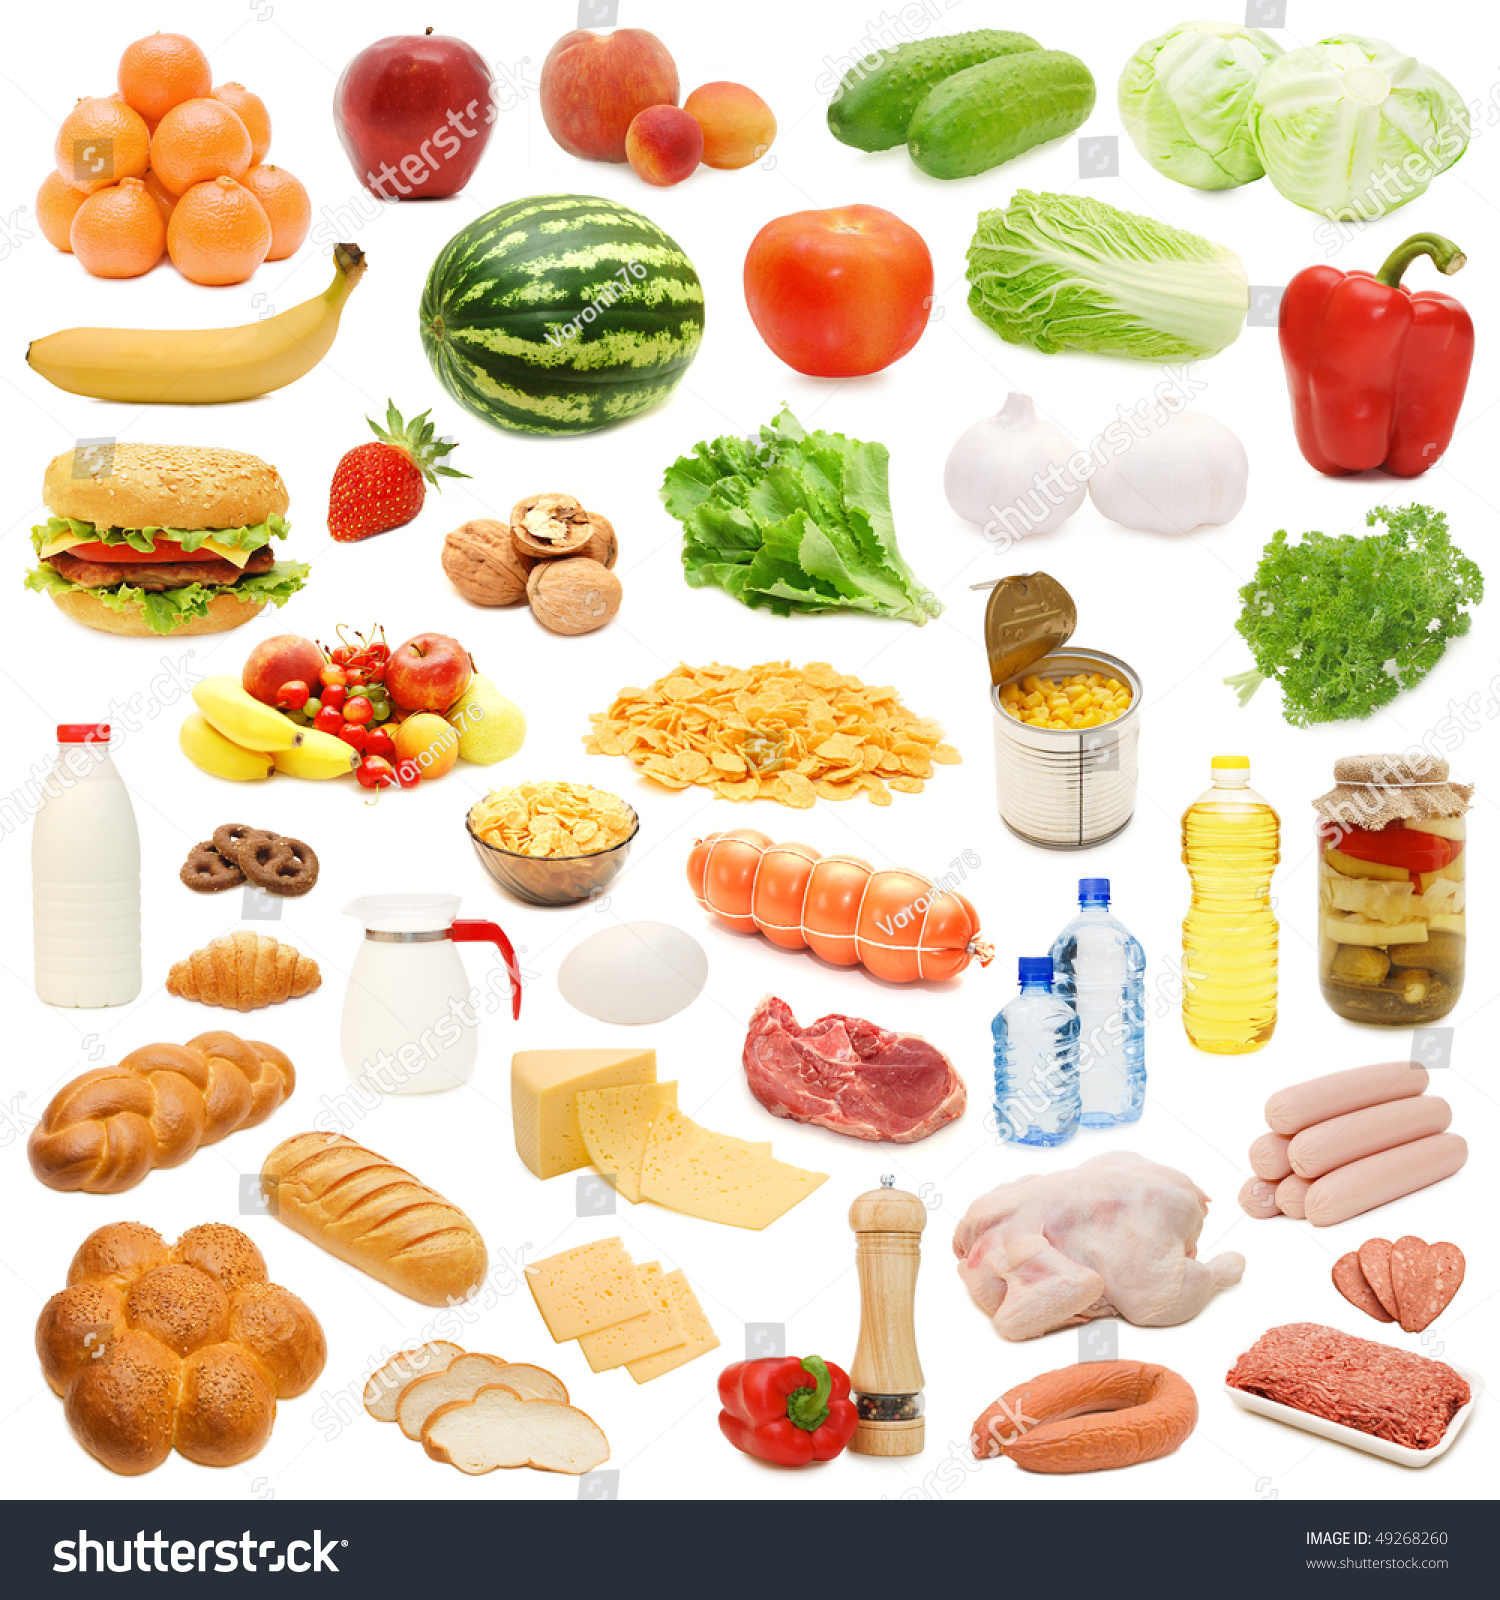 предметные картинки продукты питания